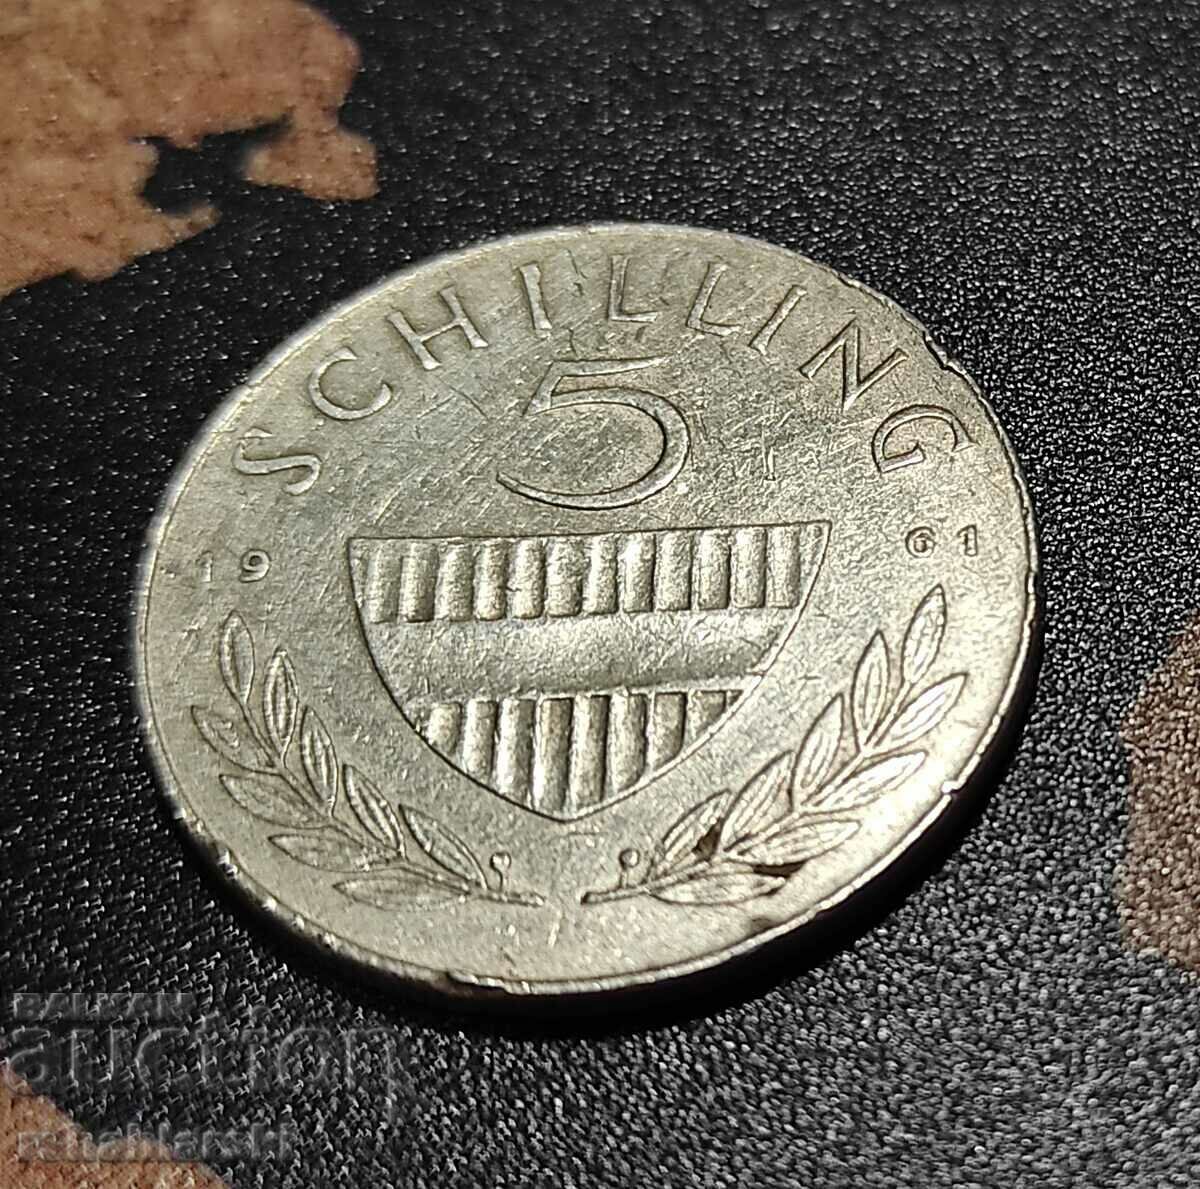 5 σελίνια, 1961 - Ασήμι 0,640